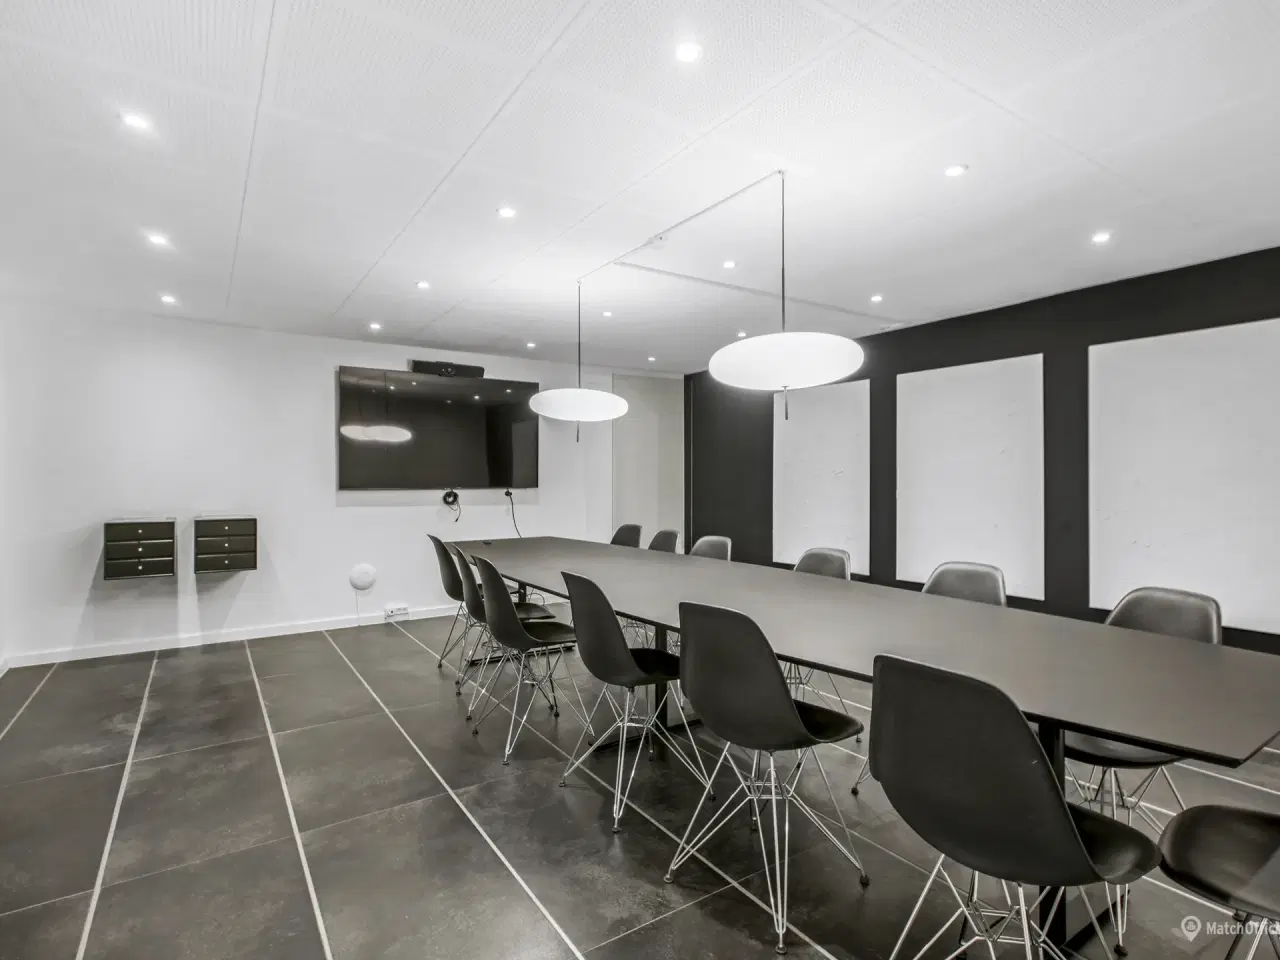 Billede 12 - Yderst indbydende kontor med højt til loftet samt fantastisk lysindfald som også indeholder mødelokale eller et lille kontor - Ring for mere info👍🏼